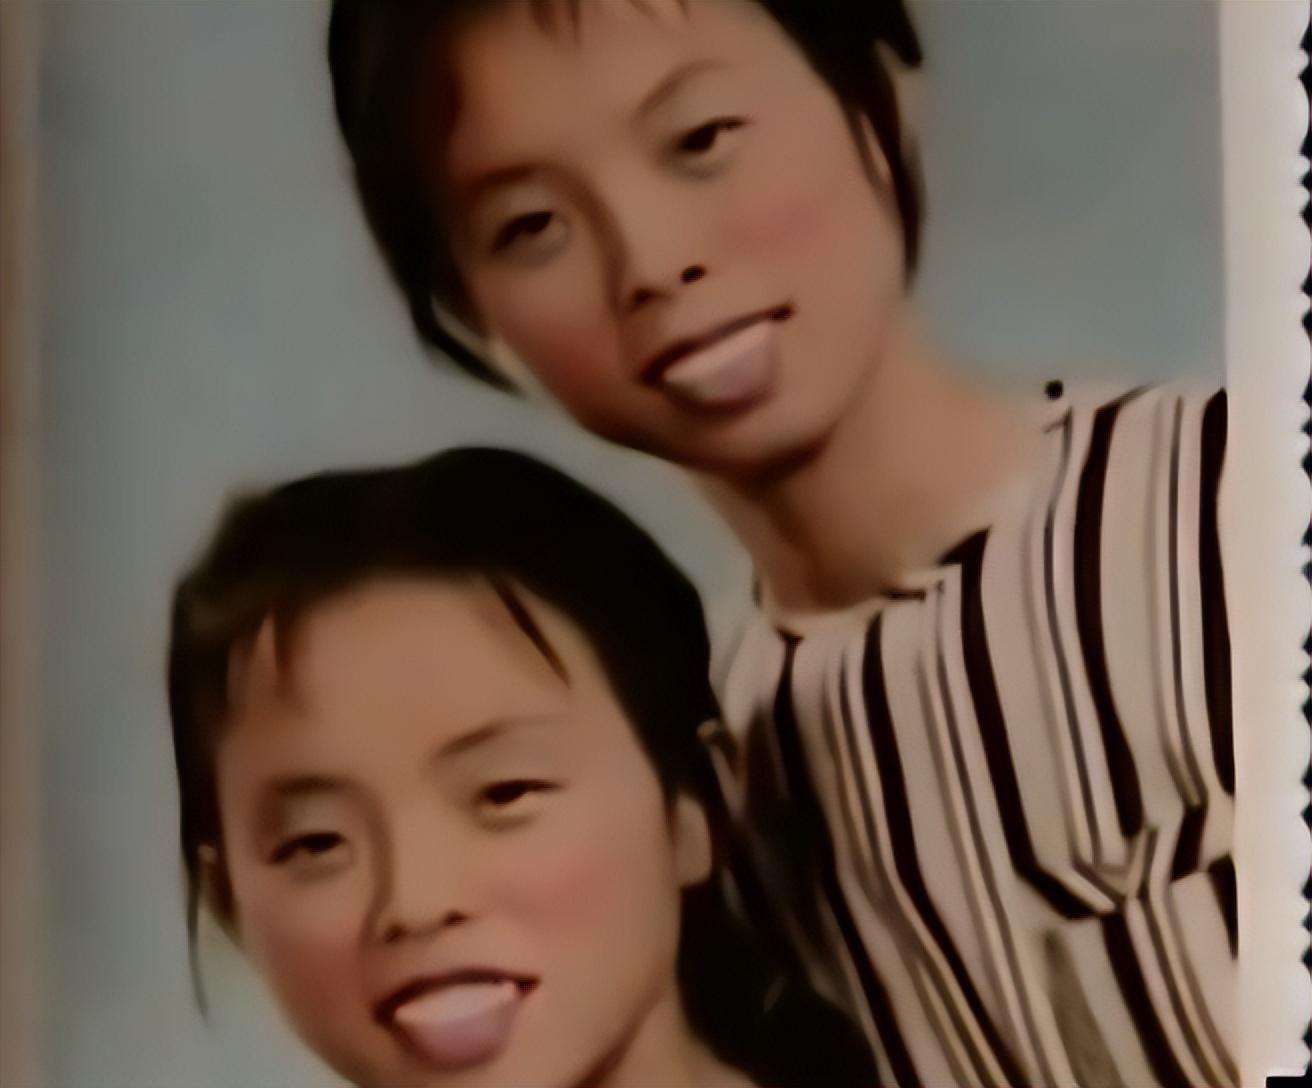 2006年,河南一对34年闺蜜,突发奇想做dna,没想到竟真是双胞胎